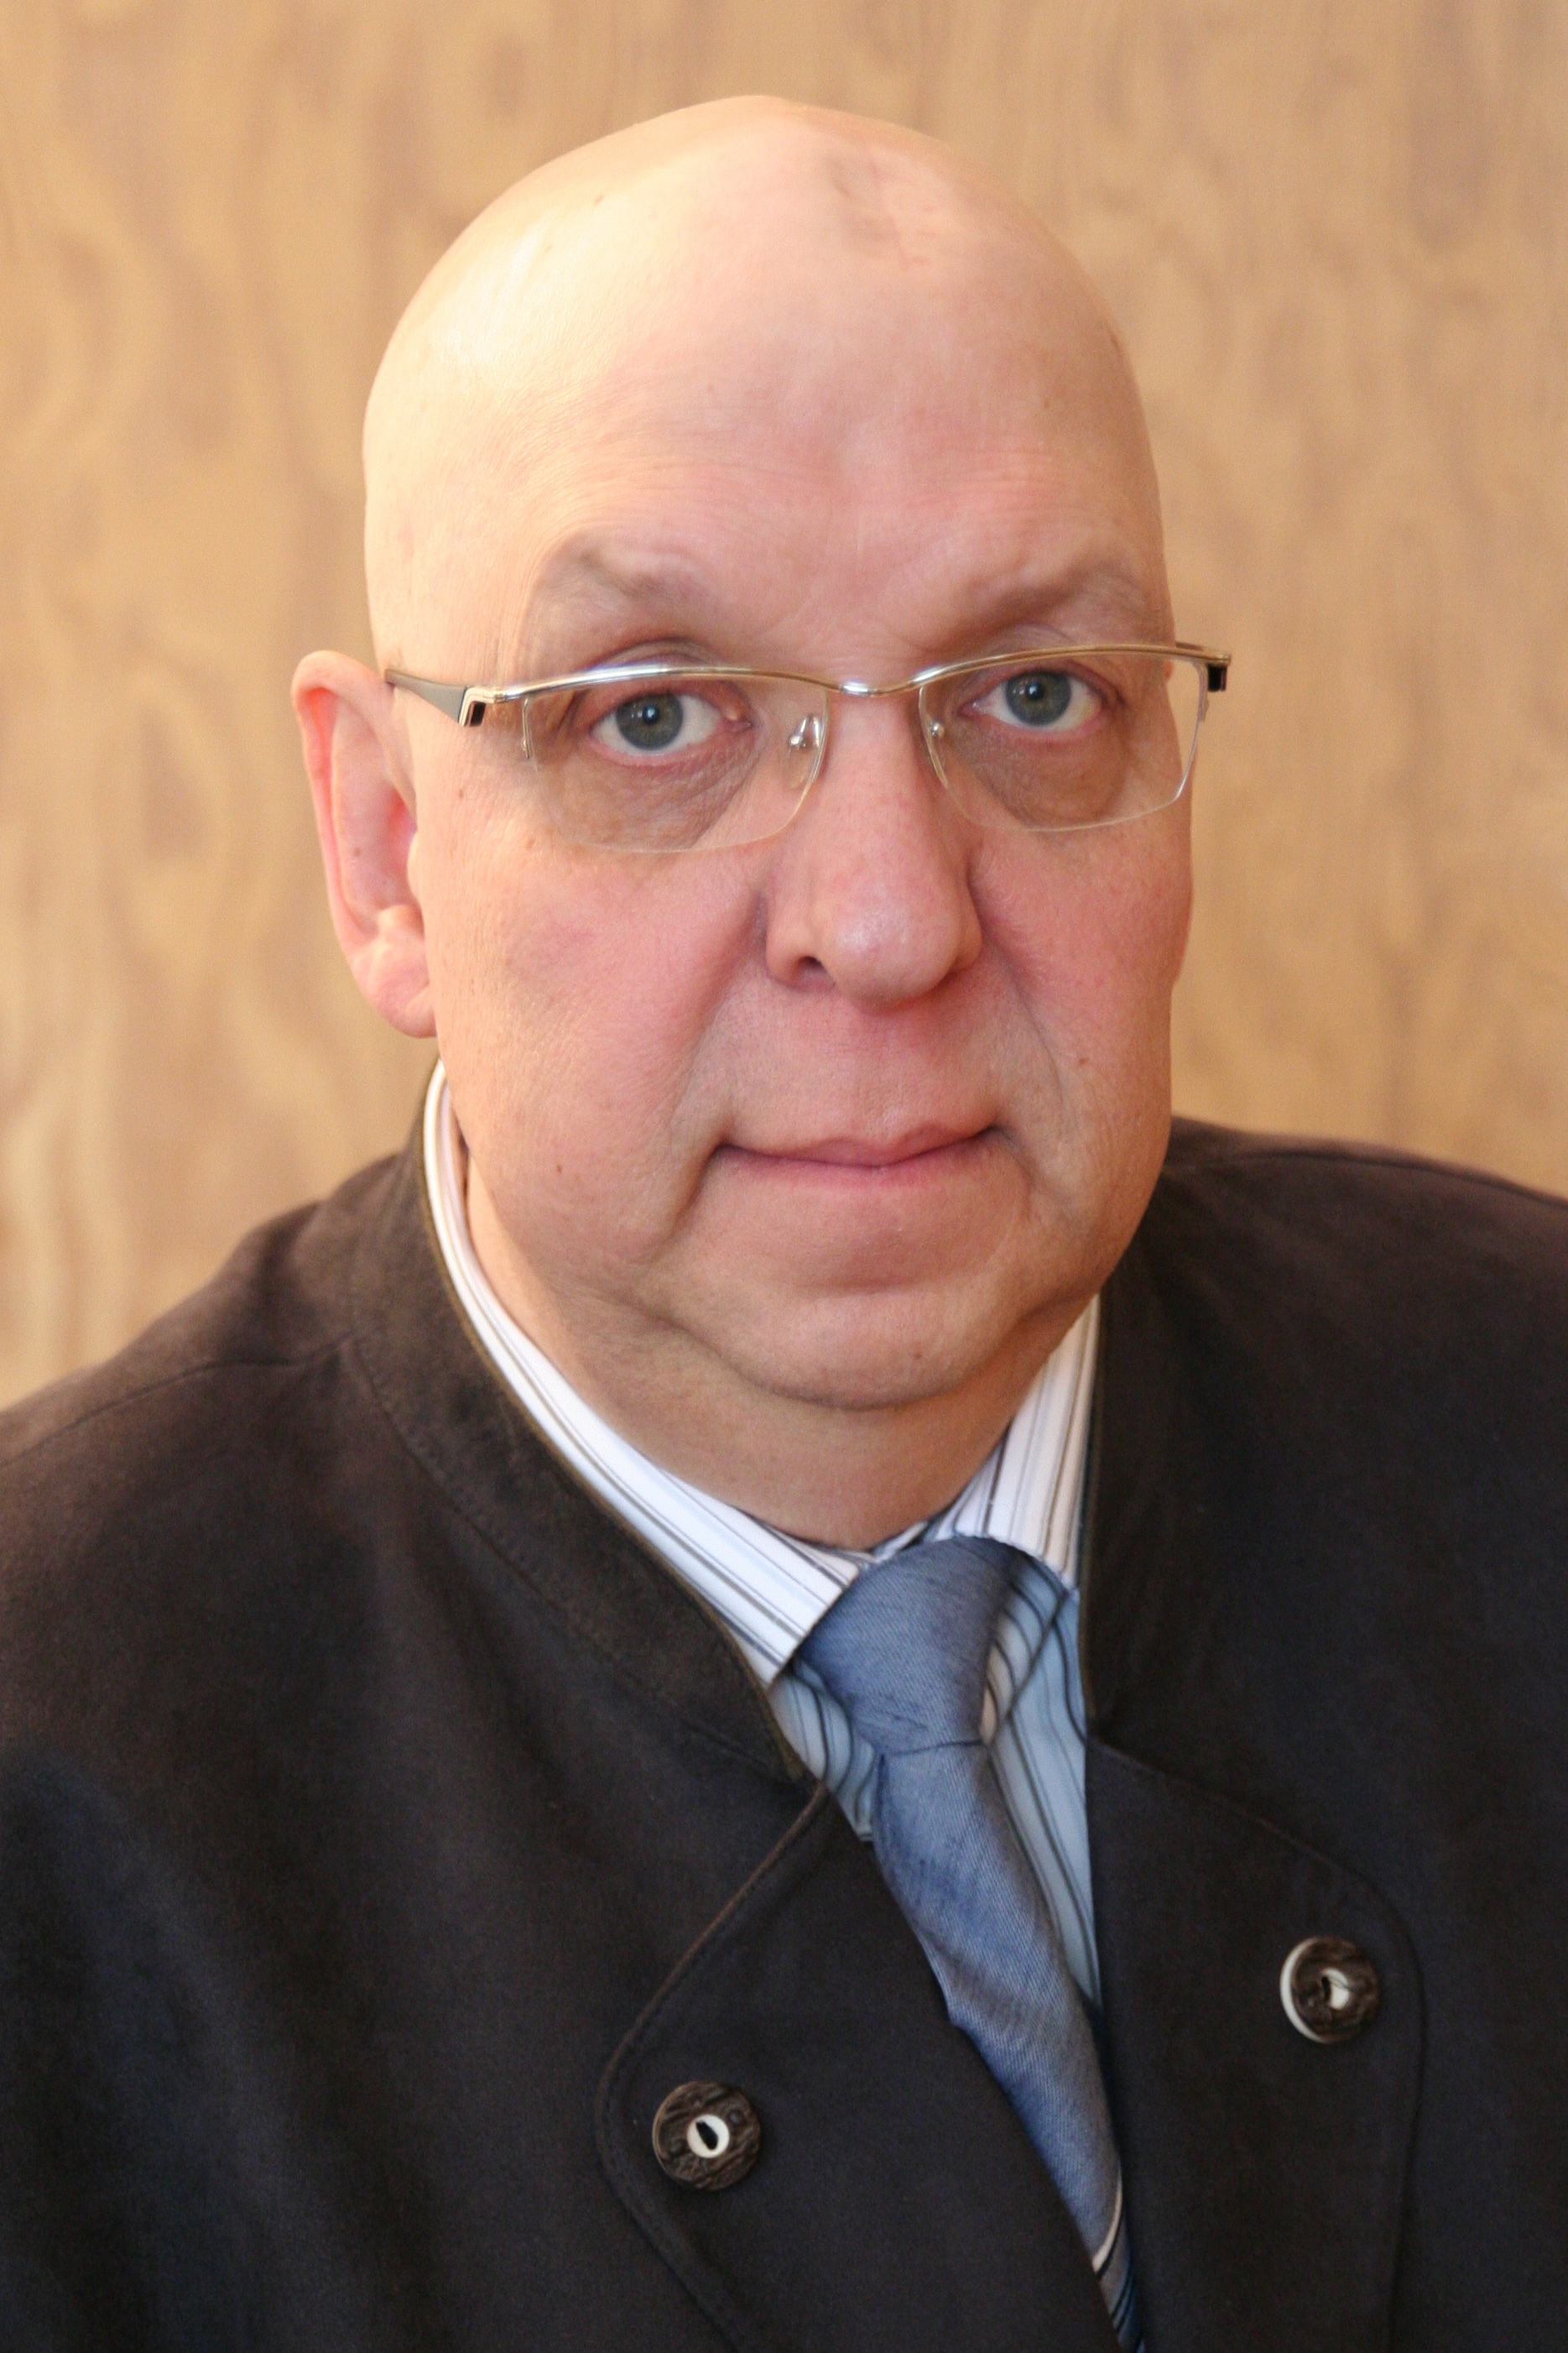 Hans-Jürgen Gläsner